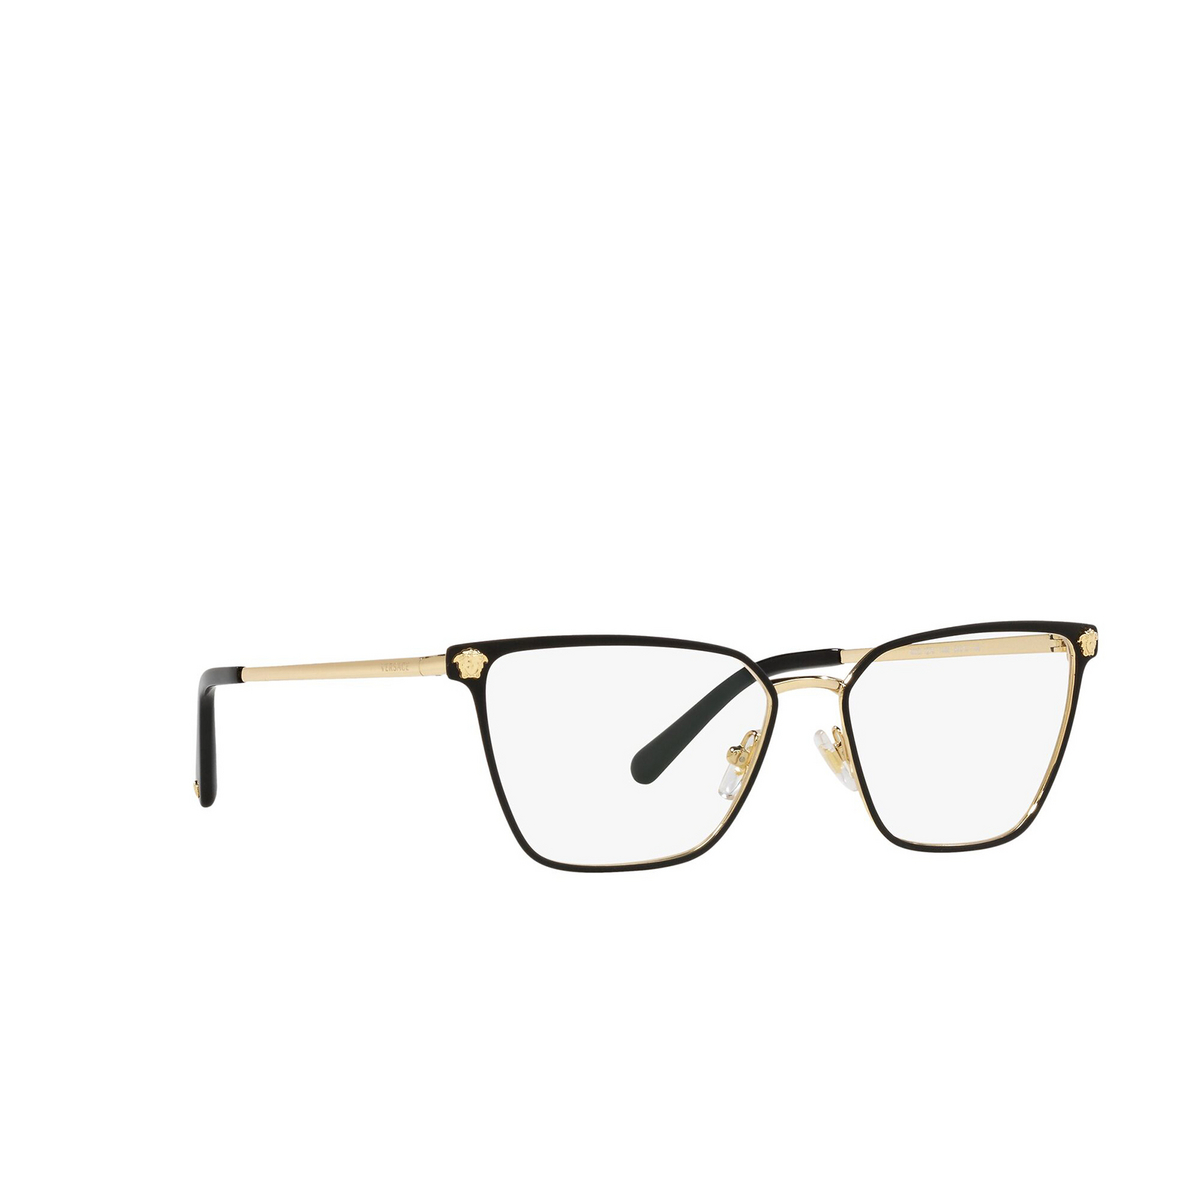 Versace® Square Eyeglasses: VE1275 color Matte Black / Gold 1433 - three-quarters view.